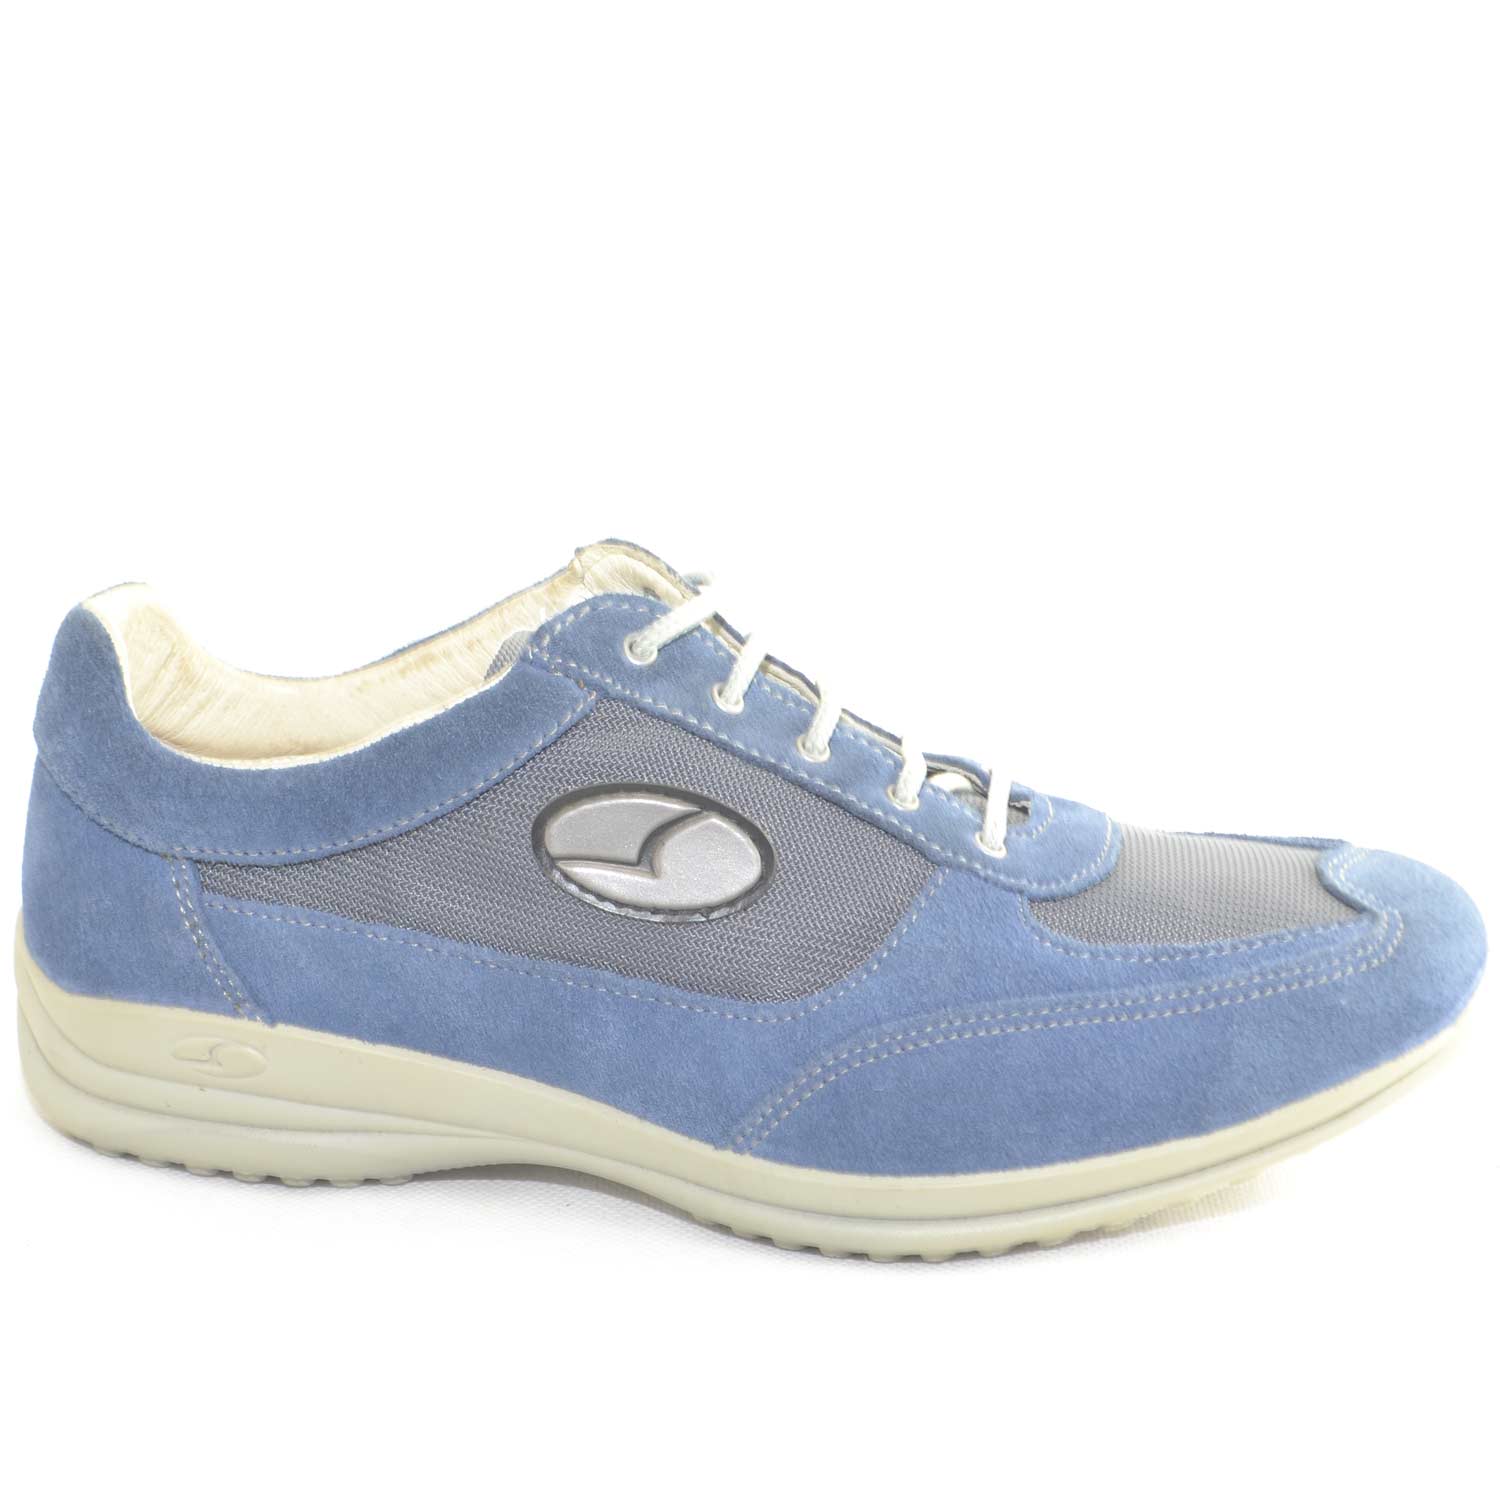 Sneakers Sportive Scarpe blu chiaro Uomo Light Step GRISPORT 8123 Made ...